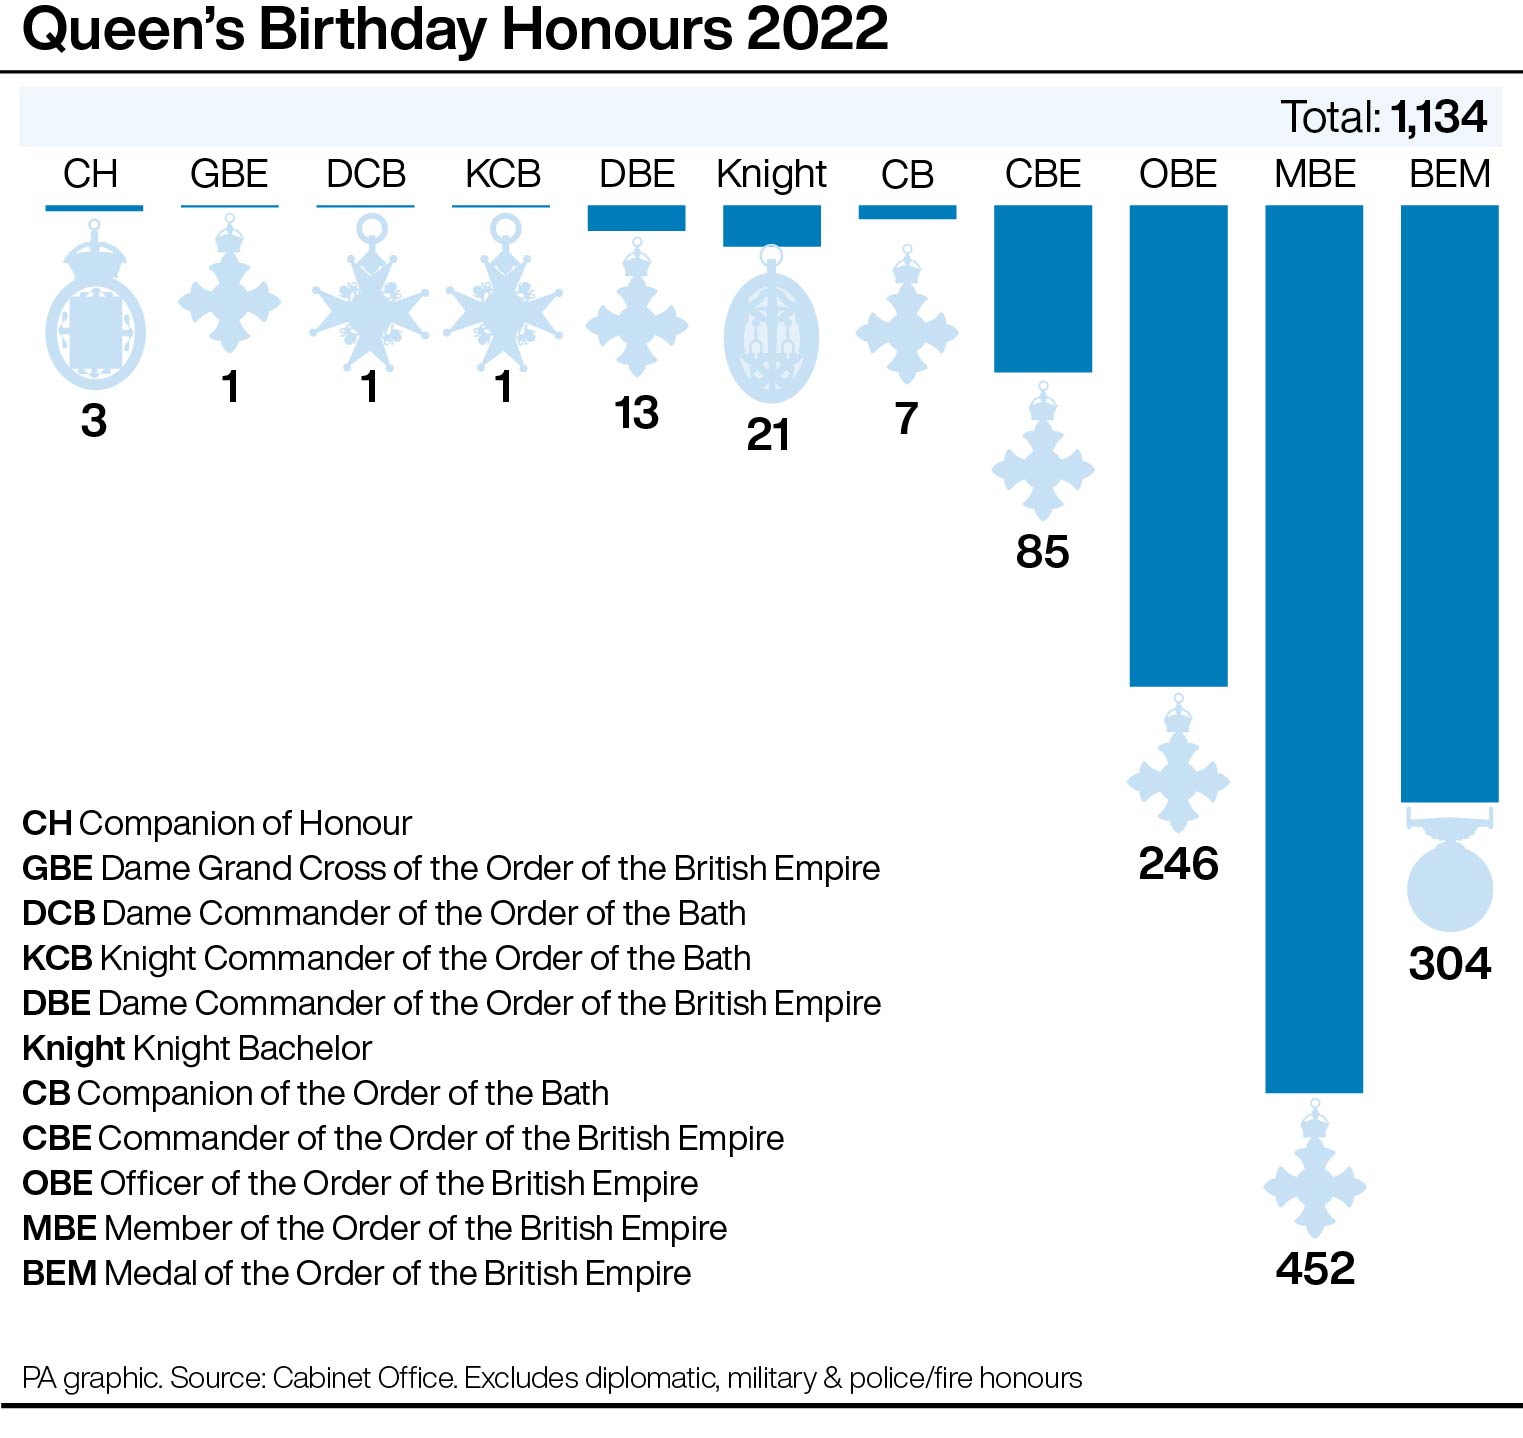 Queen’s birthday honours 2022